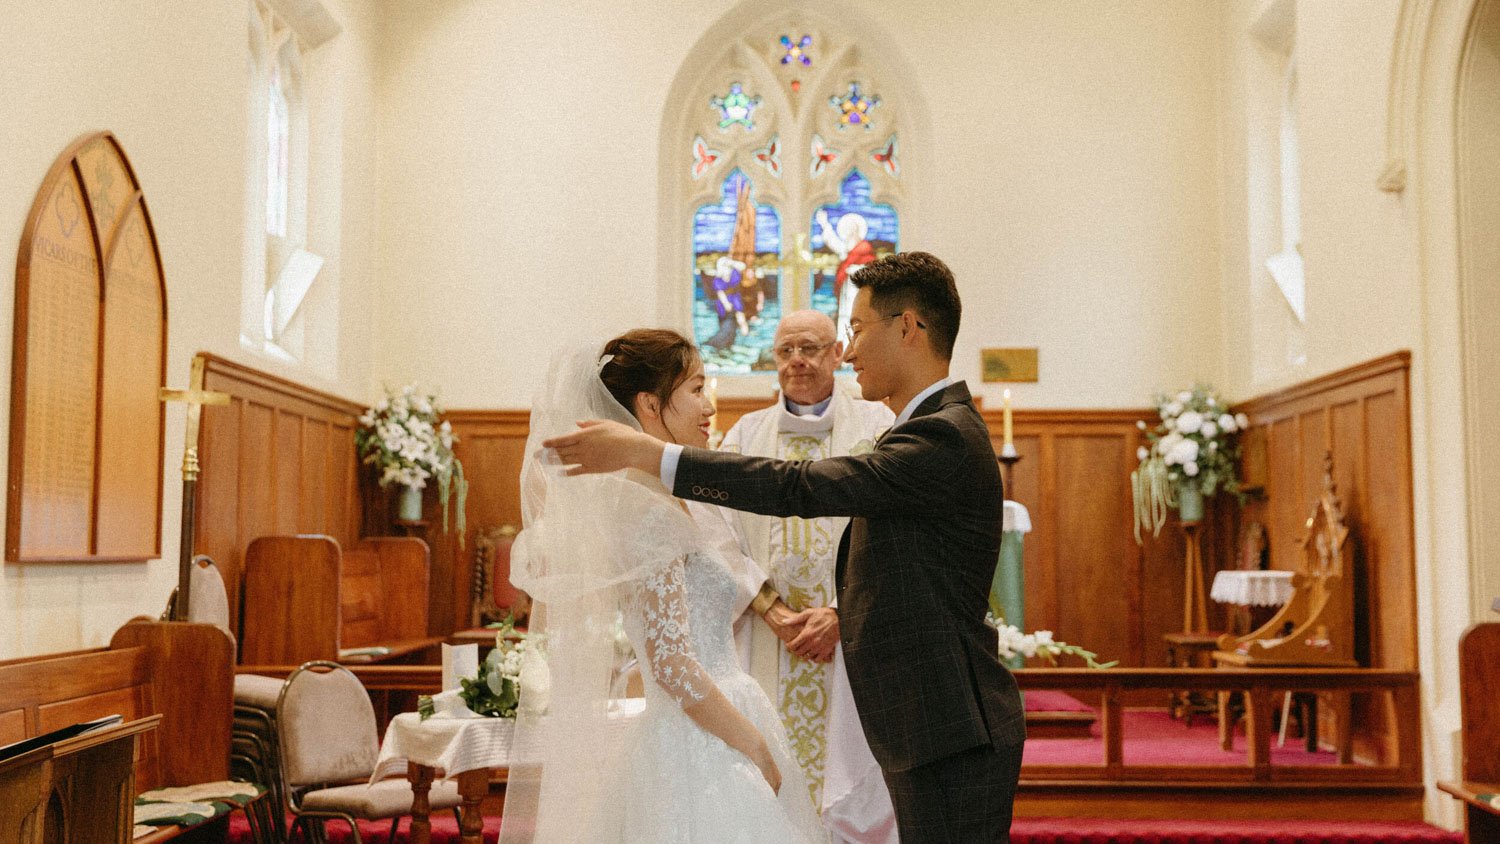 Queenstownn St Peter's Anglican Church wedding elopement photographer Panda Bay Films-15.jpg